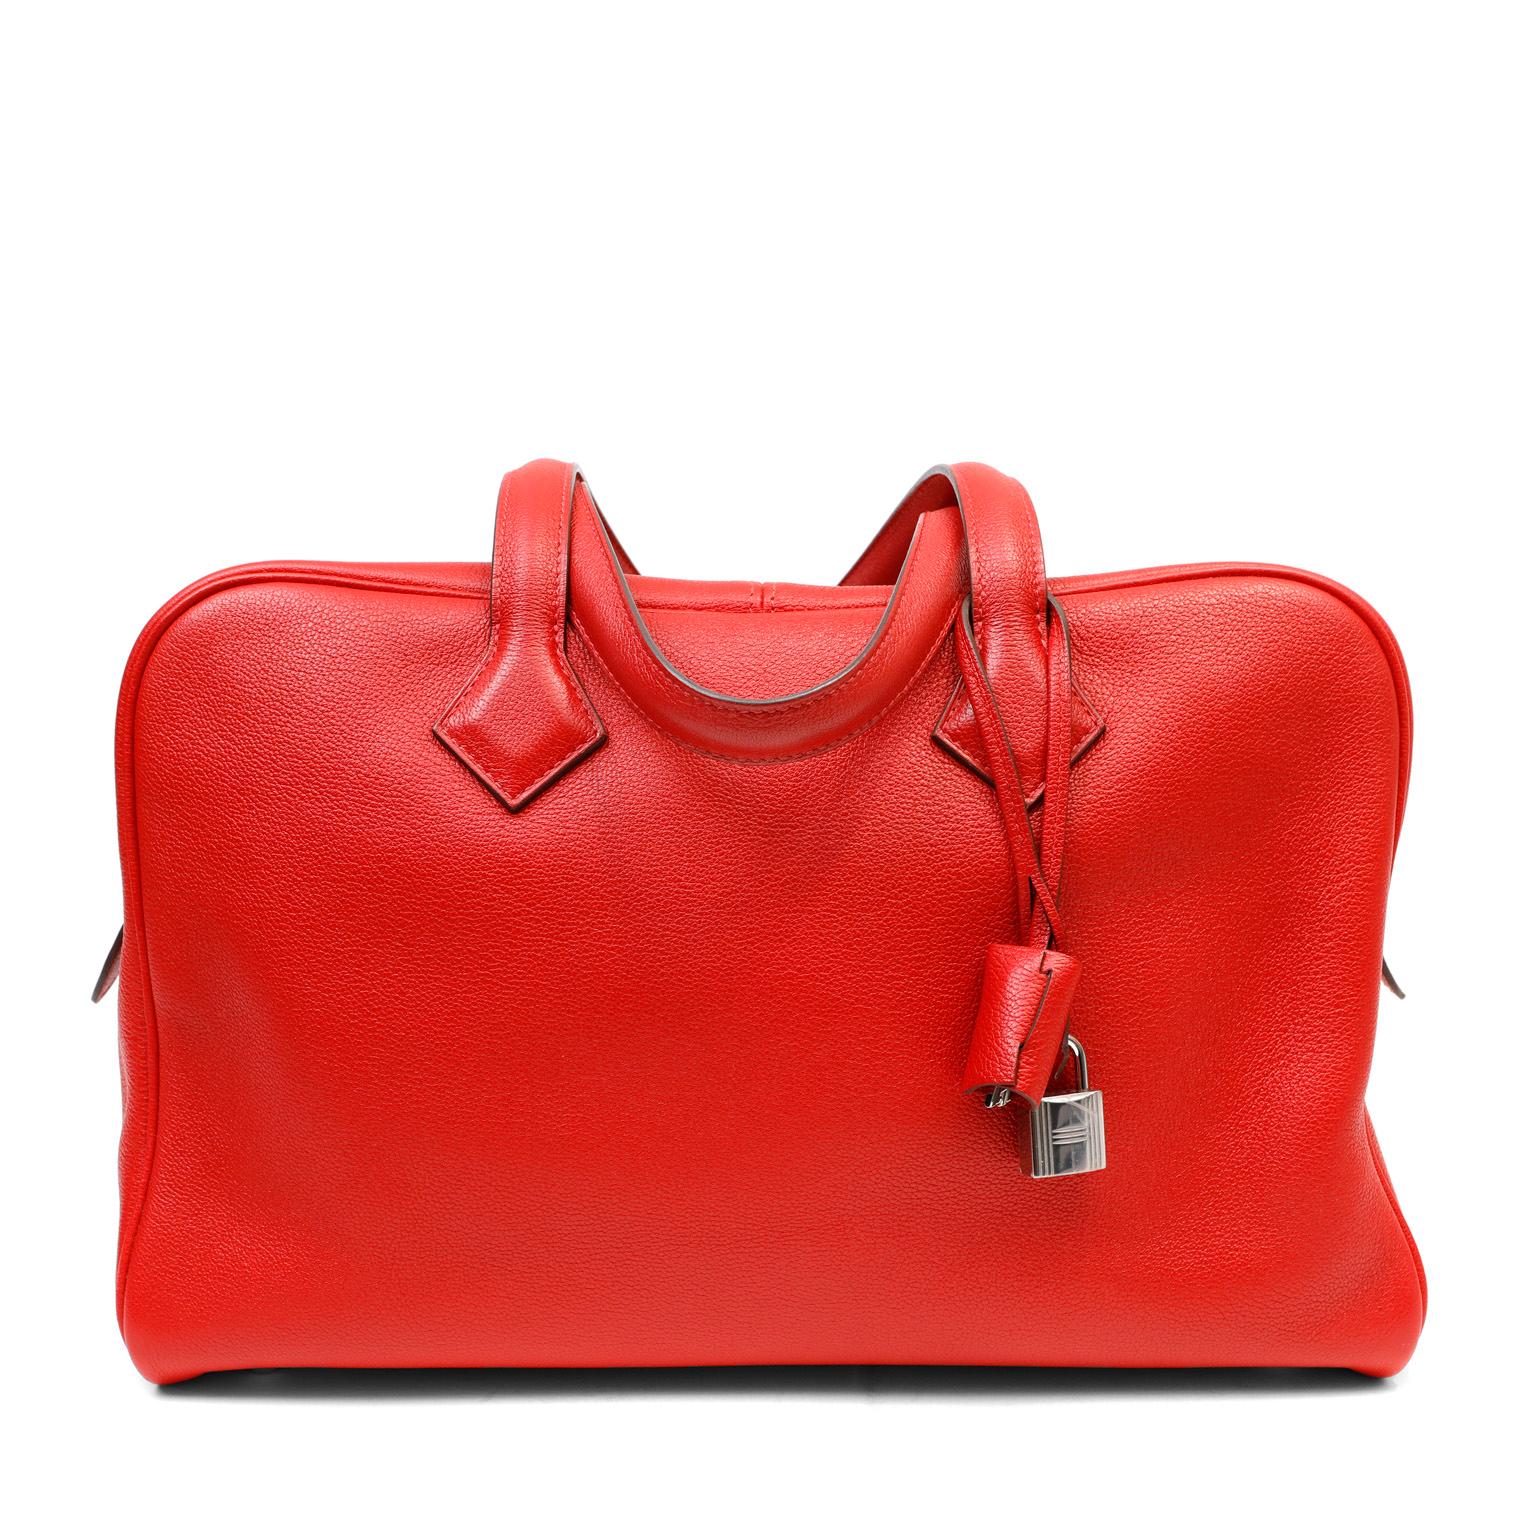 Diese authentische Hermès Red Clemence Victoria II Tasche ist in ausgezeichnetem plus Zustand.  Die entspannte Silhouette ist geräumig und liegt aus strukturiertem lippenstiftrotem Clemence-Leder weich in der Hand.  Der doppelte